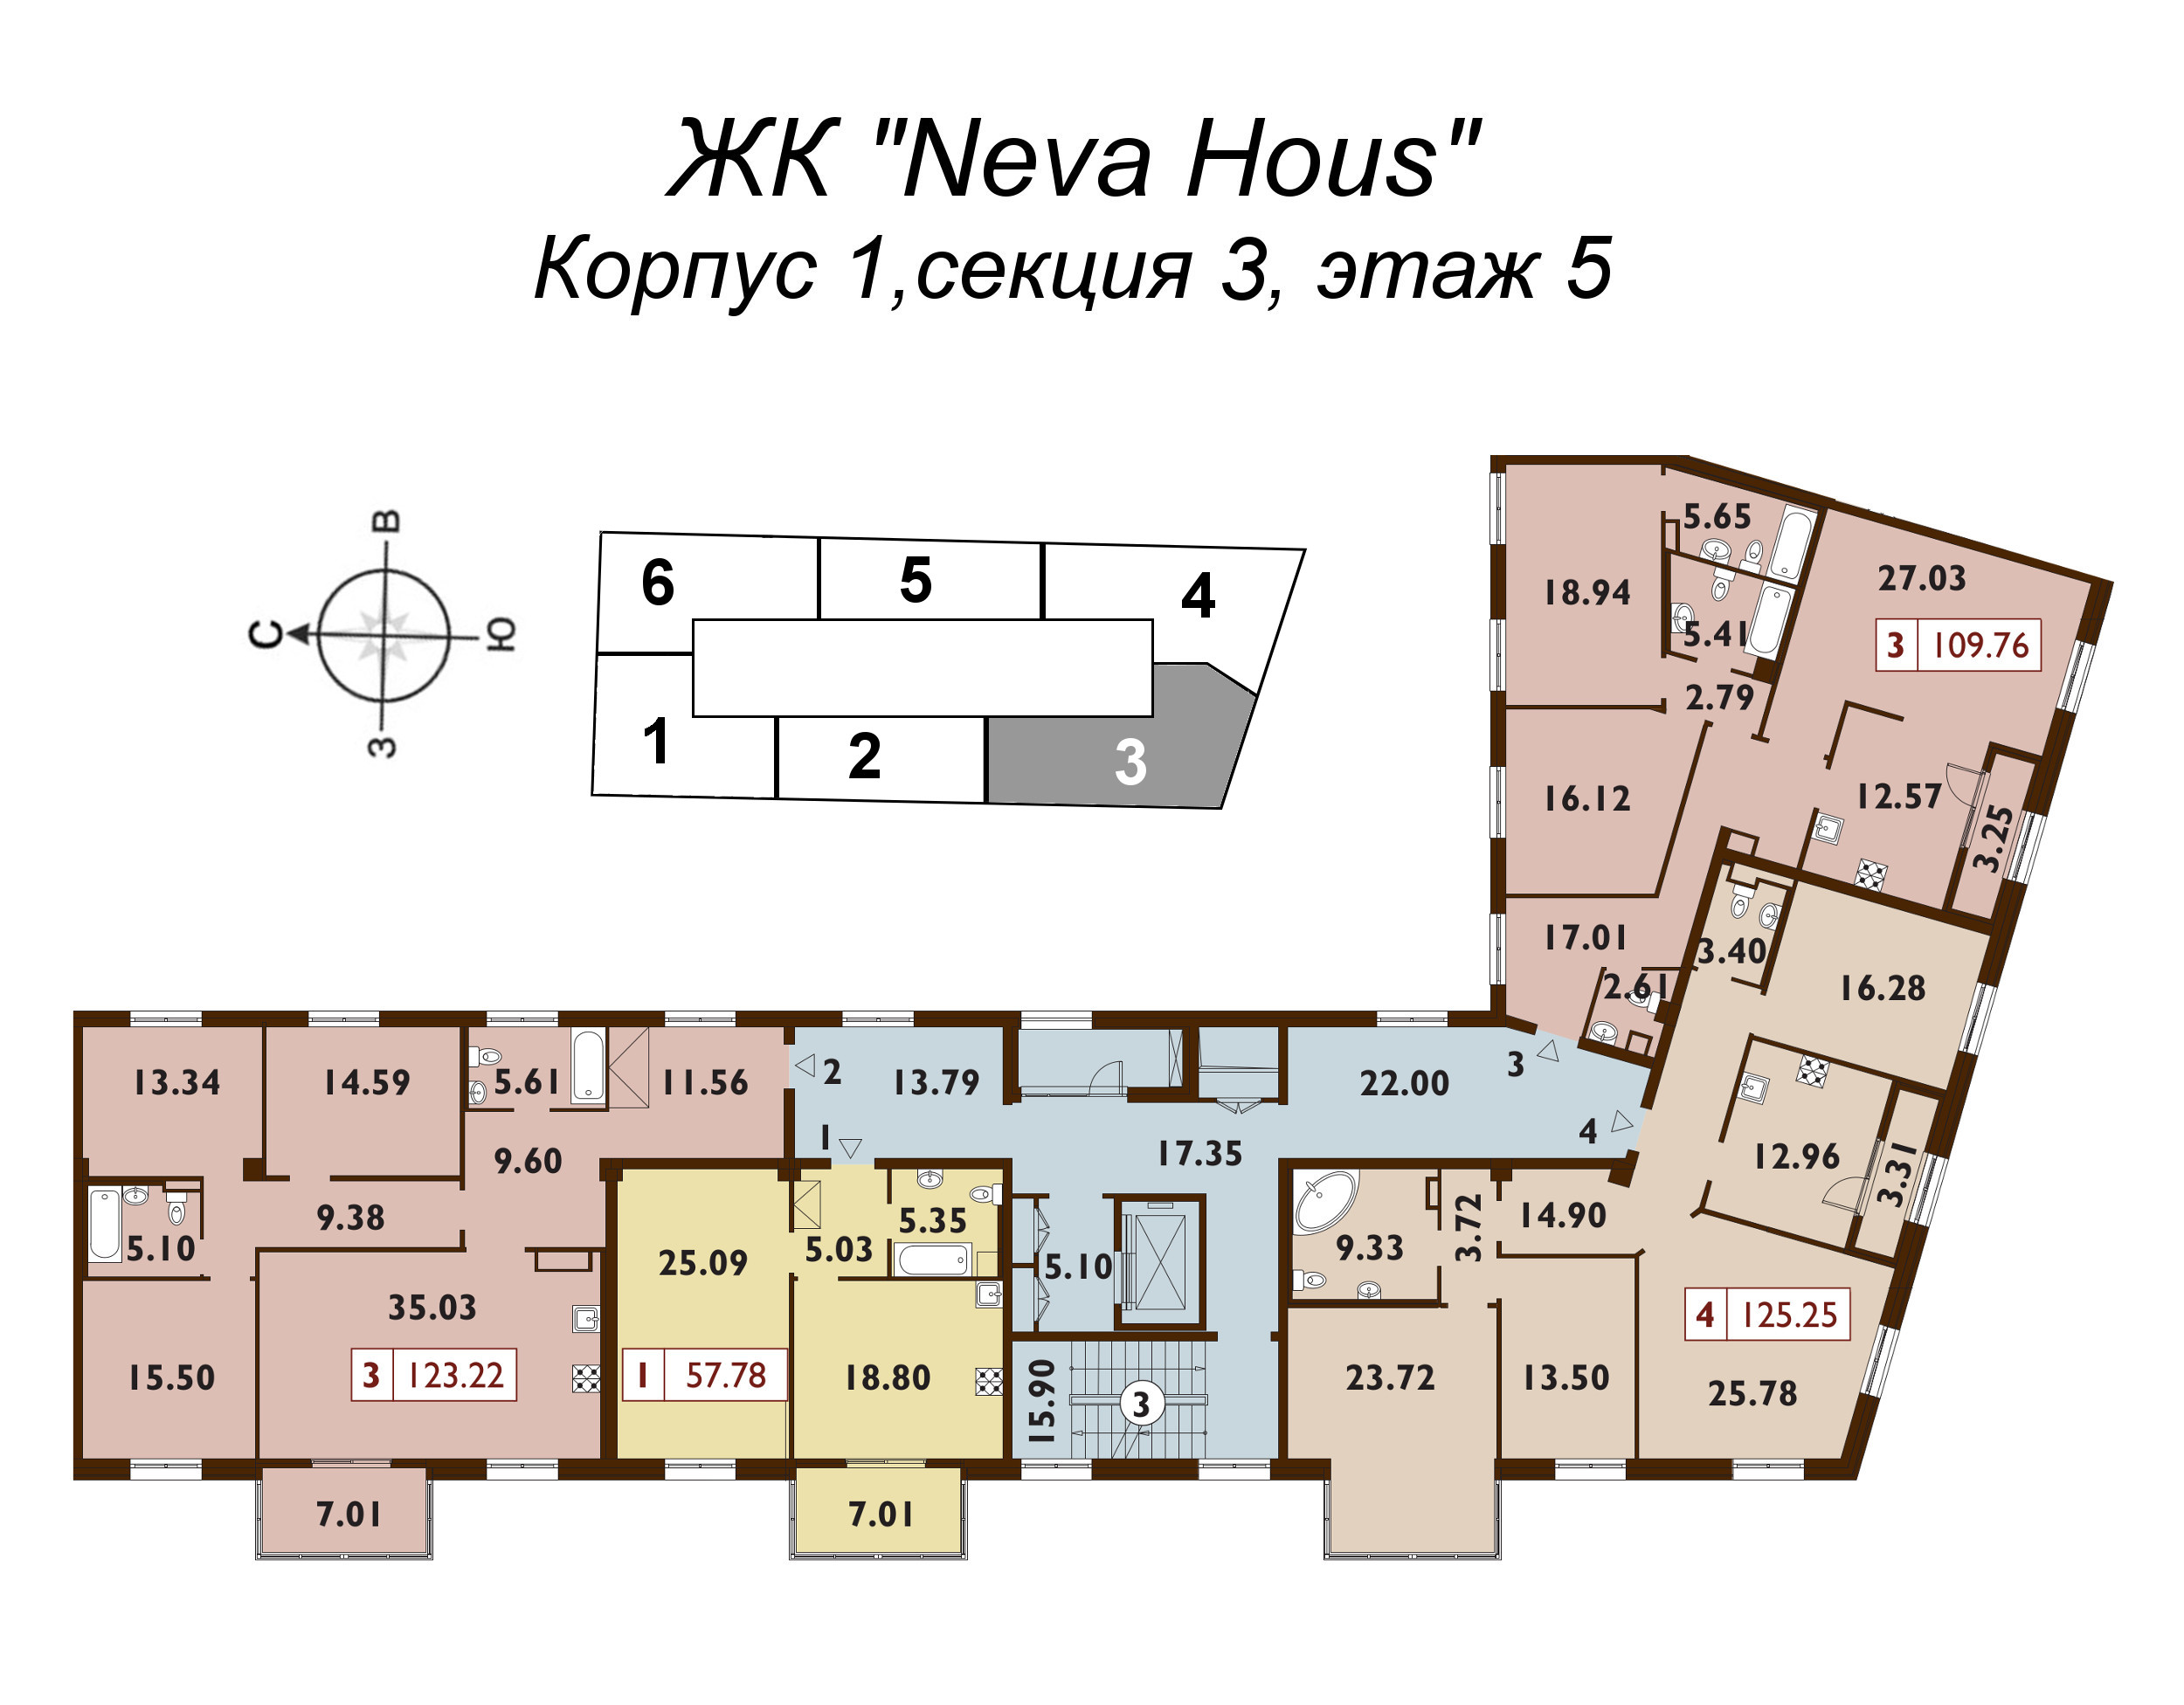 4-комнатная квартира, 122.9 м² в ЖК "Neva Haus" - планировка этажа